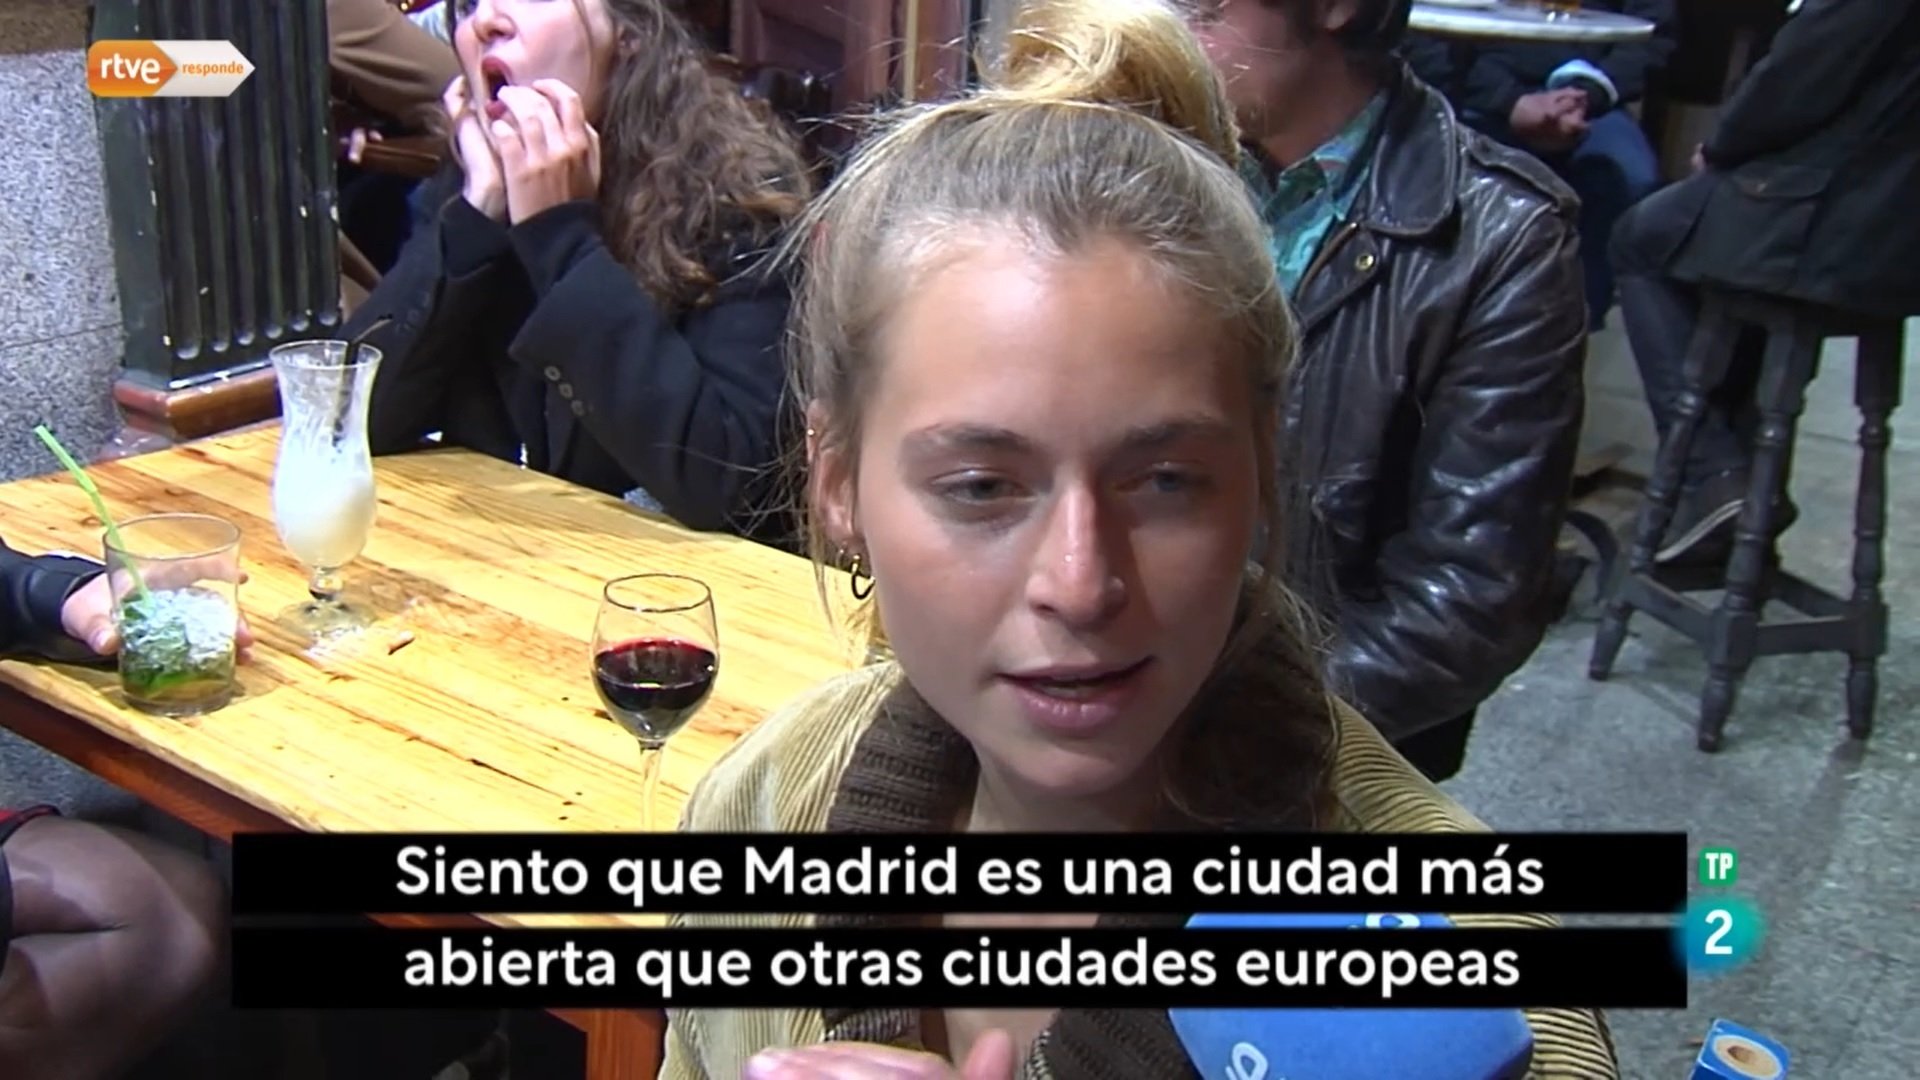 TVE confunde "España" con "Madrid", y lo atribuye a un error humano